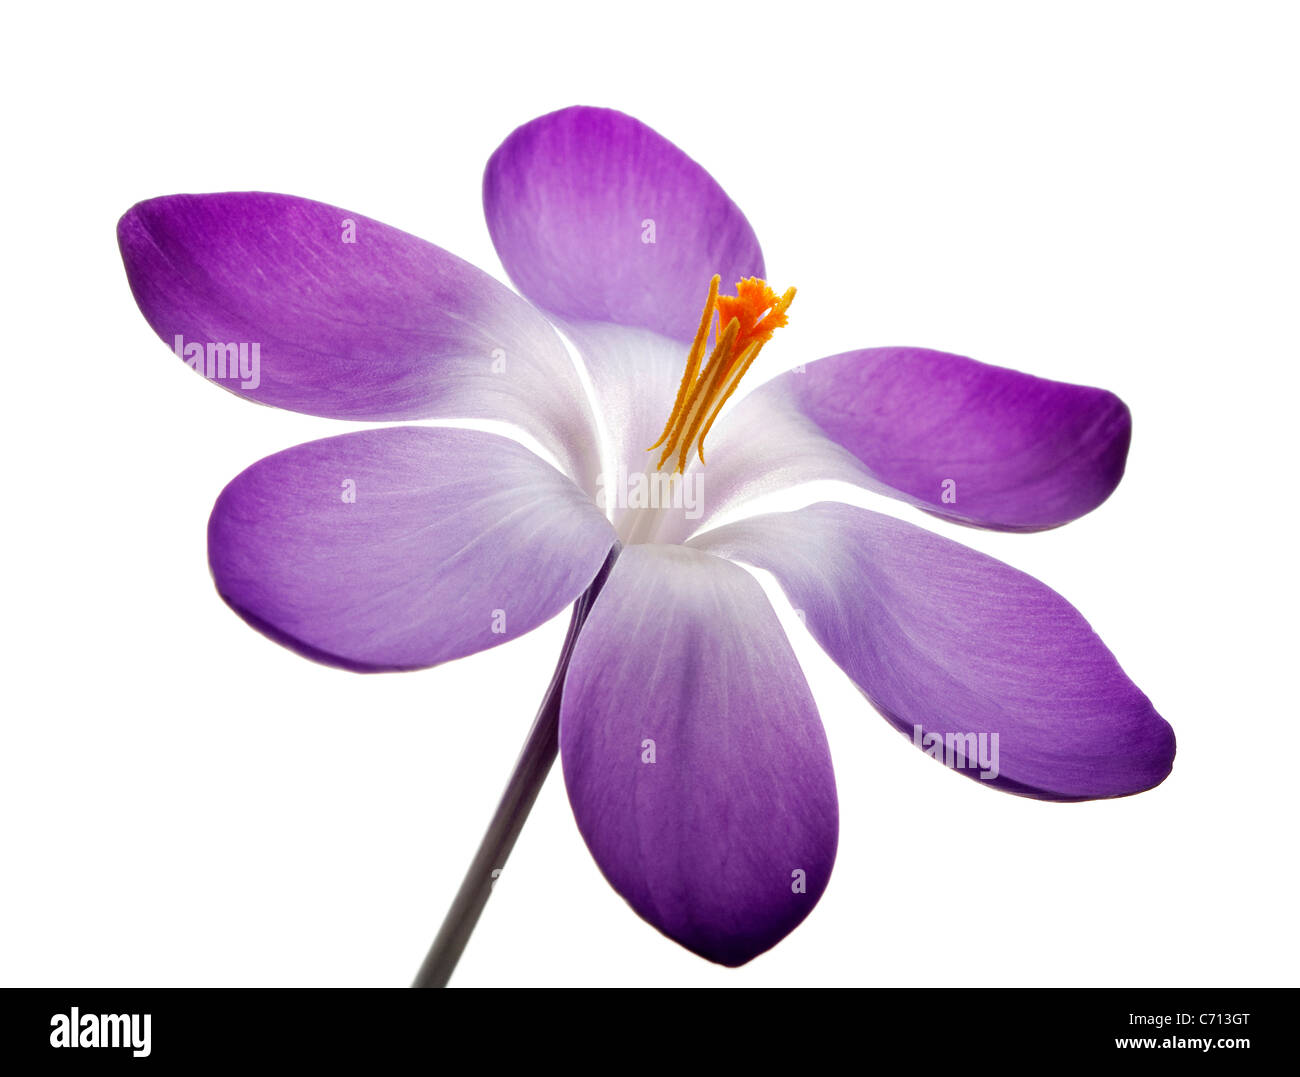 Crocus vernus, Crocus, Purple flower and yellow stamens subject, White background Stock Photo